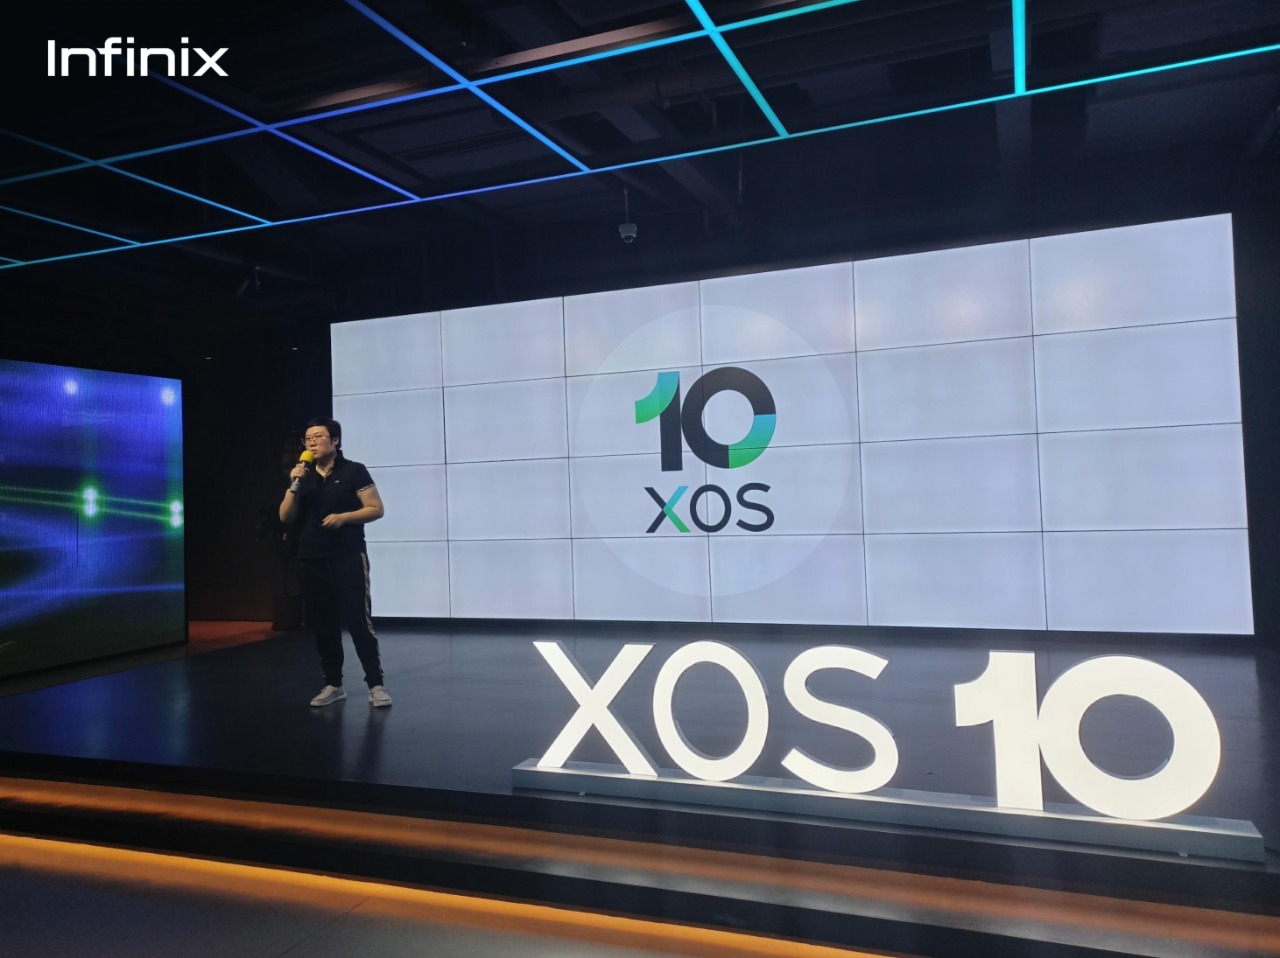 بعد تطويره كلياً.. انفينكس تطلق نظام التشغيل الجديد  XOS 10